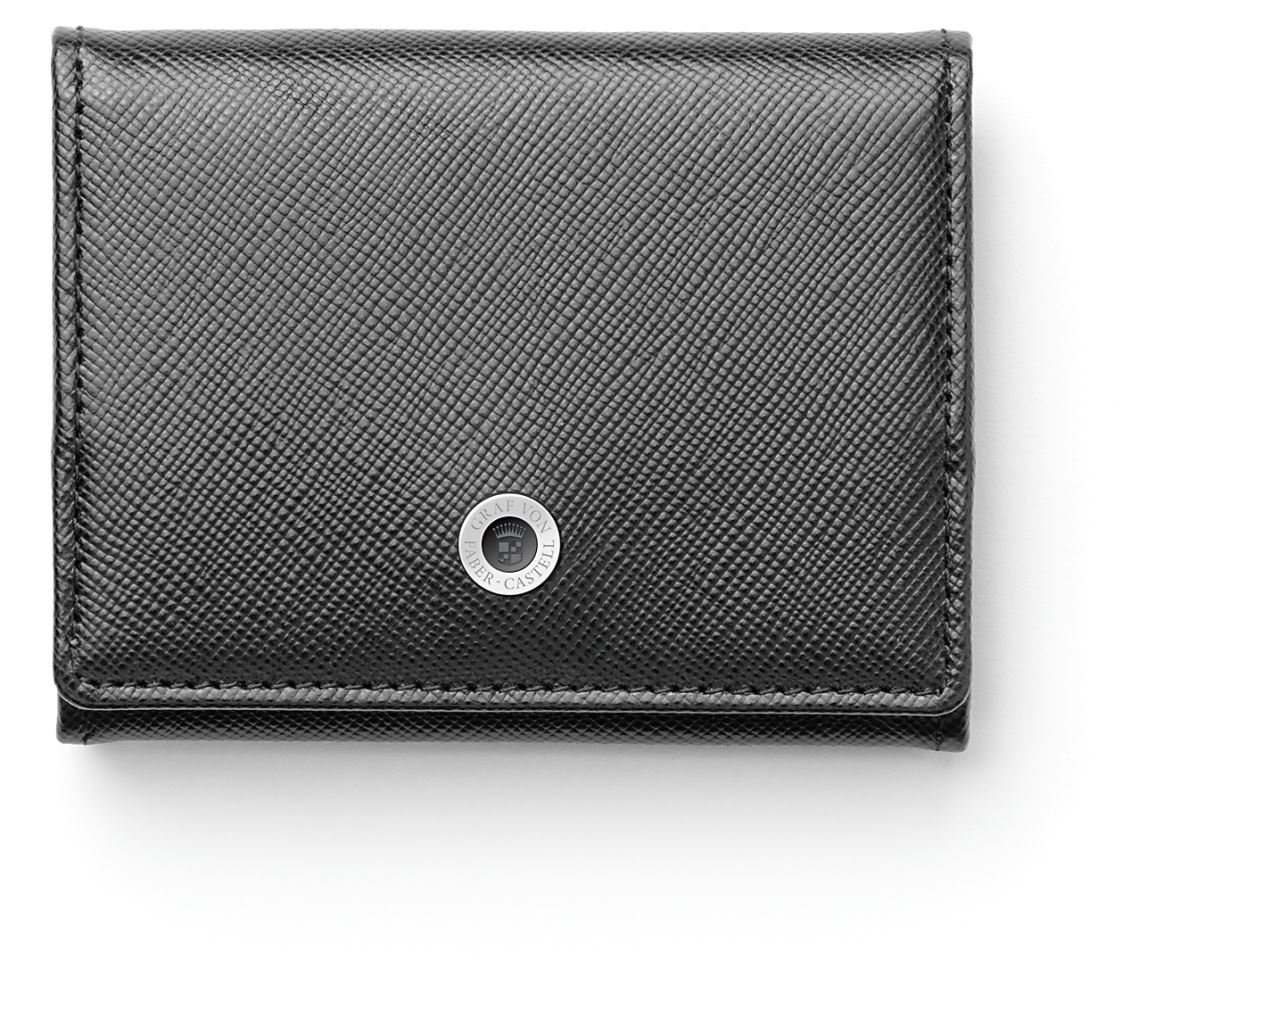 Graf-von-Faber-Castell - Coin purse small Saffiano black